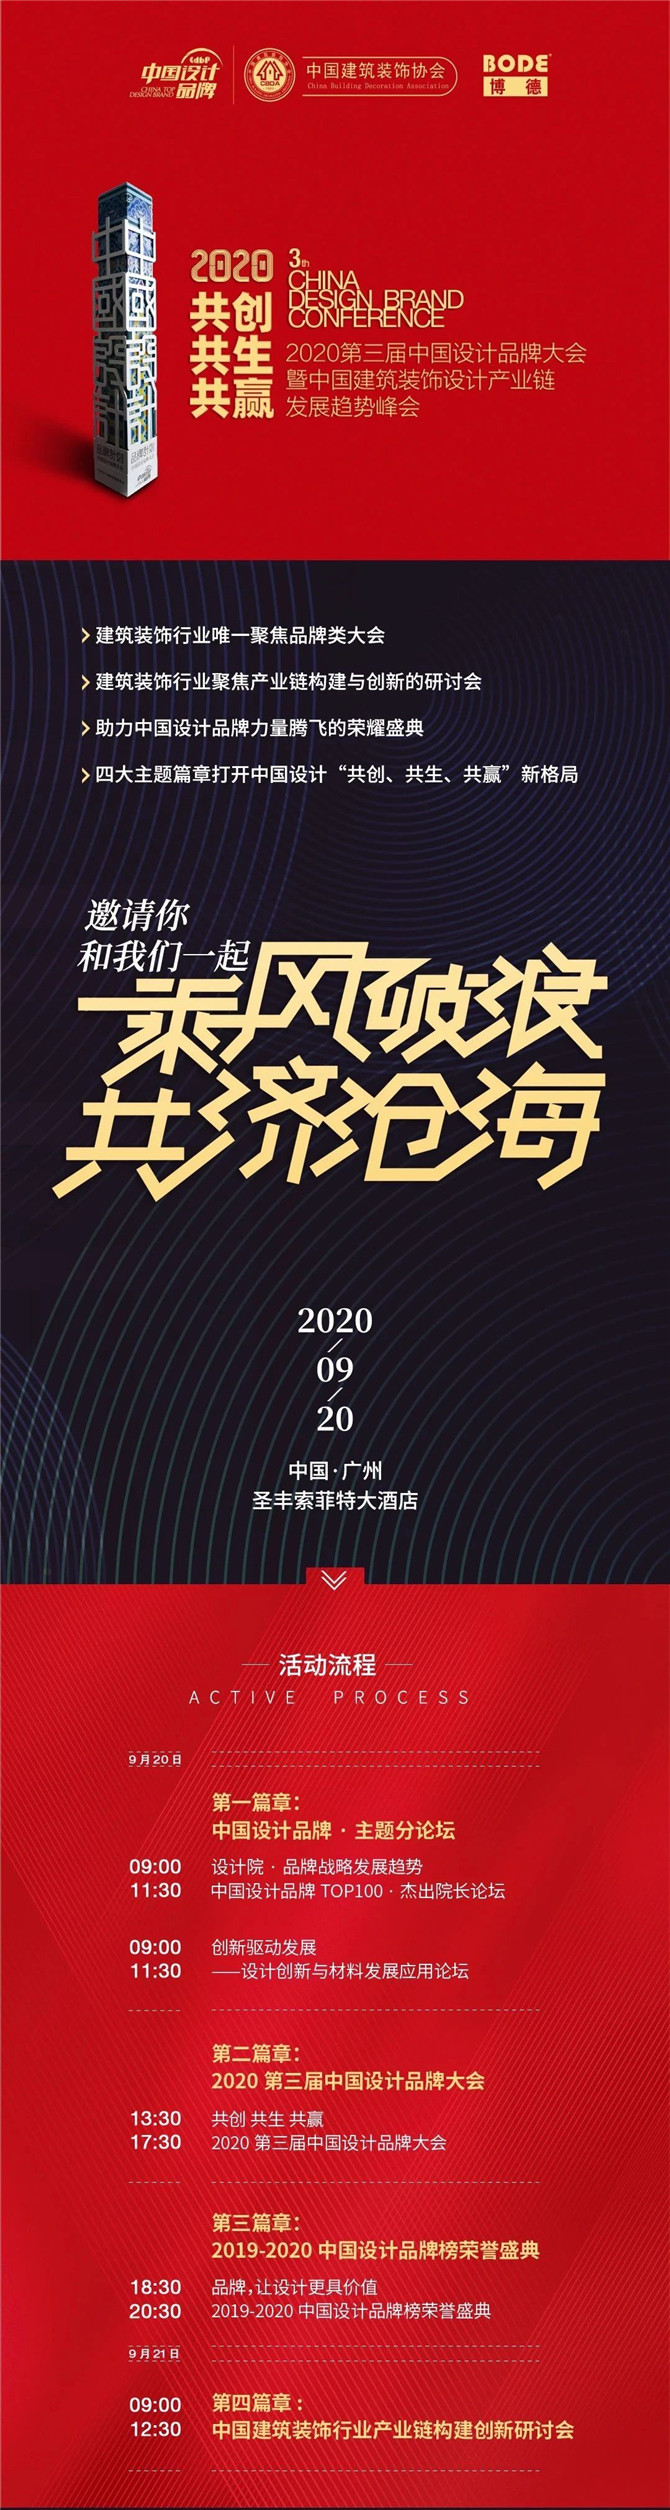 2020第三届中国设计品牌大会暨中国建筑装饰设计产业链发展趋势峰会邀请函.jpg